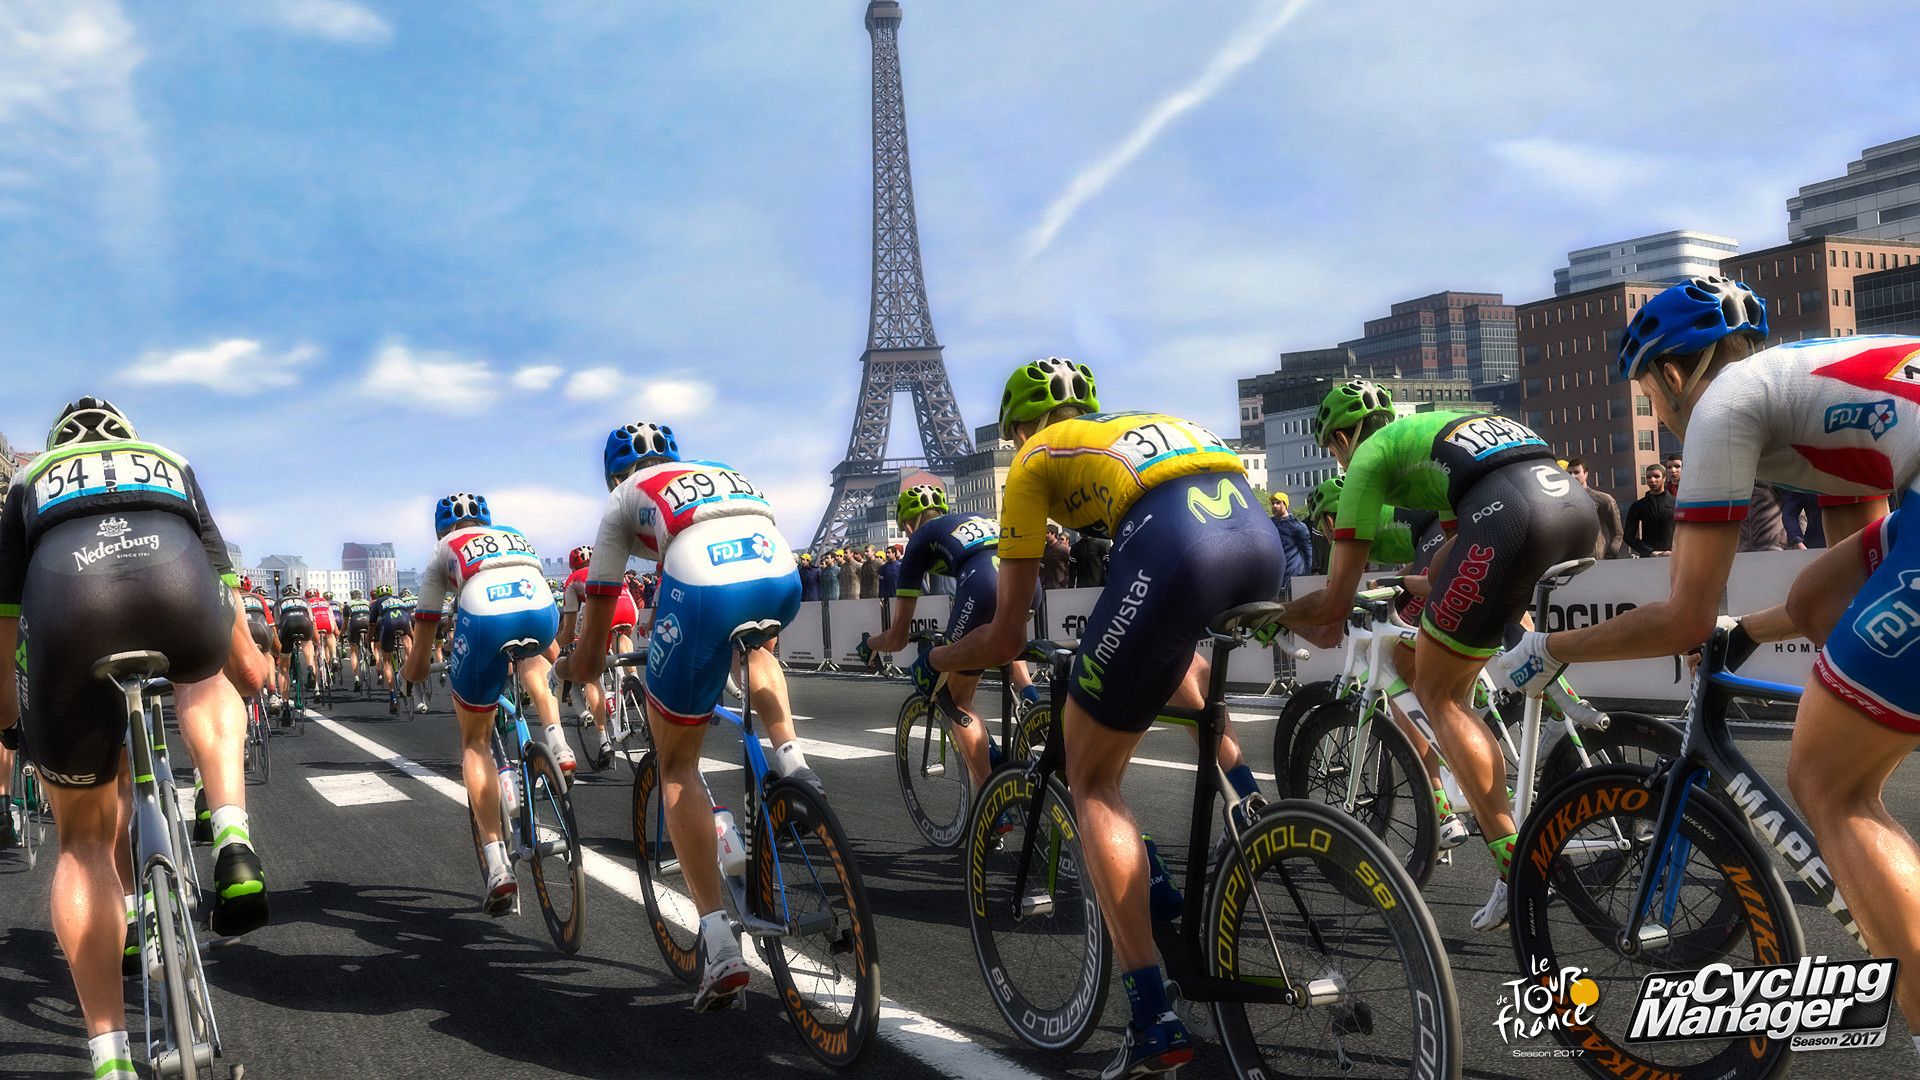 Tour De France Wallpapers - 4k, HD Tour De France Backgrounds on